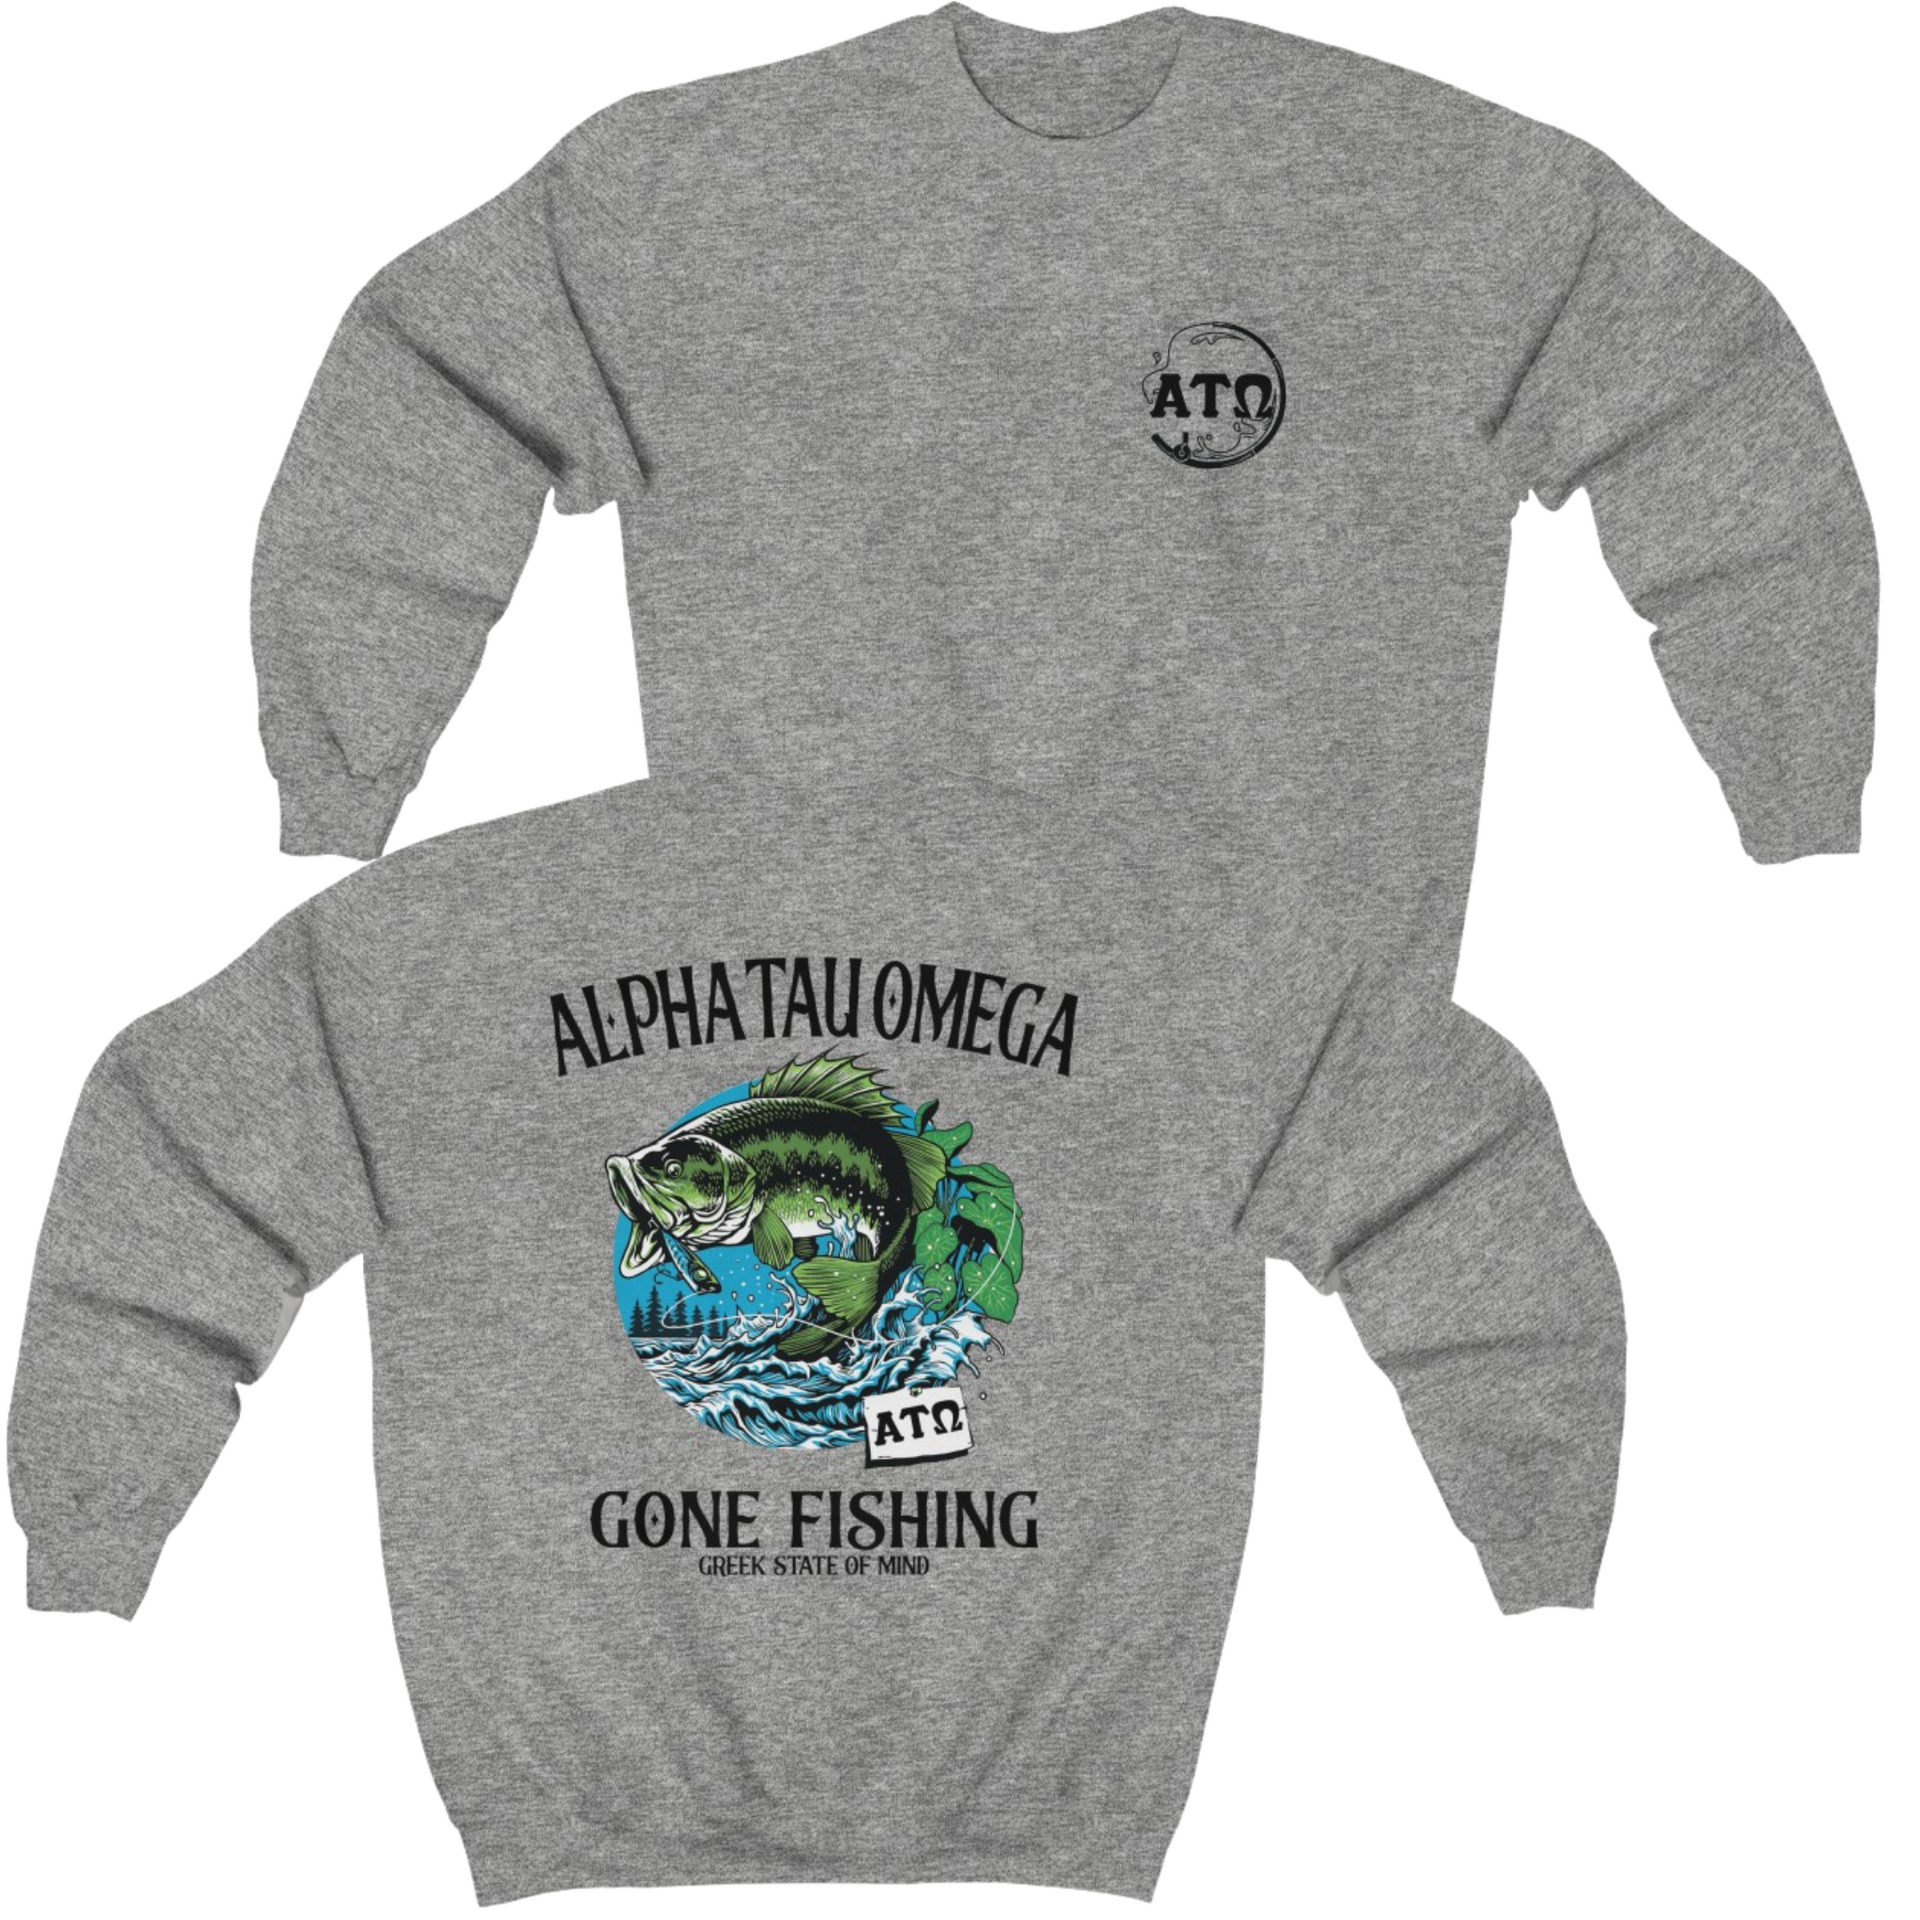 Grey Alpha Tau Omega Graphic Crewneck Sweatshirt | Gone Fishing | Alpha Tau Omega Fraternity Merch 